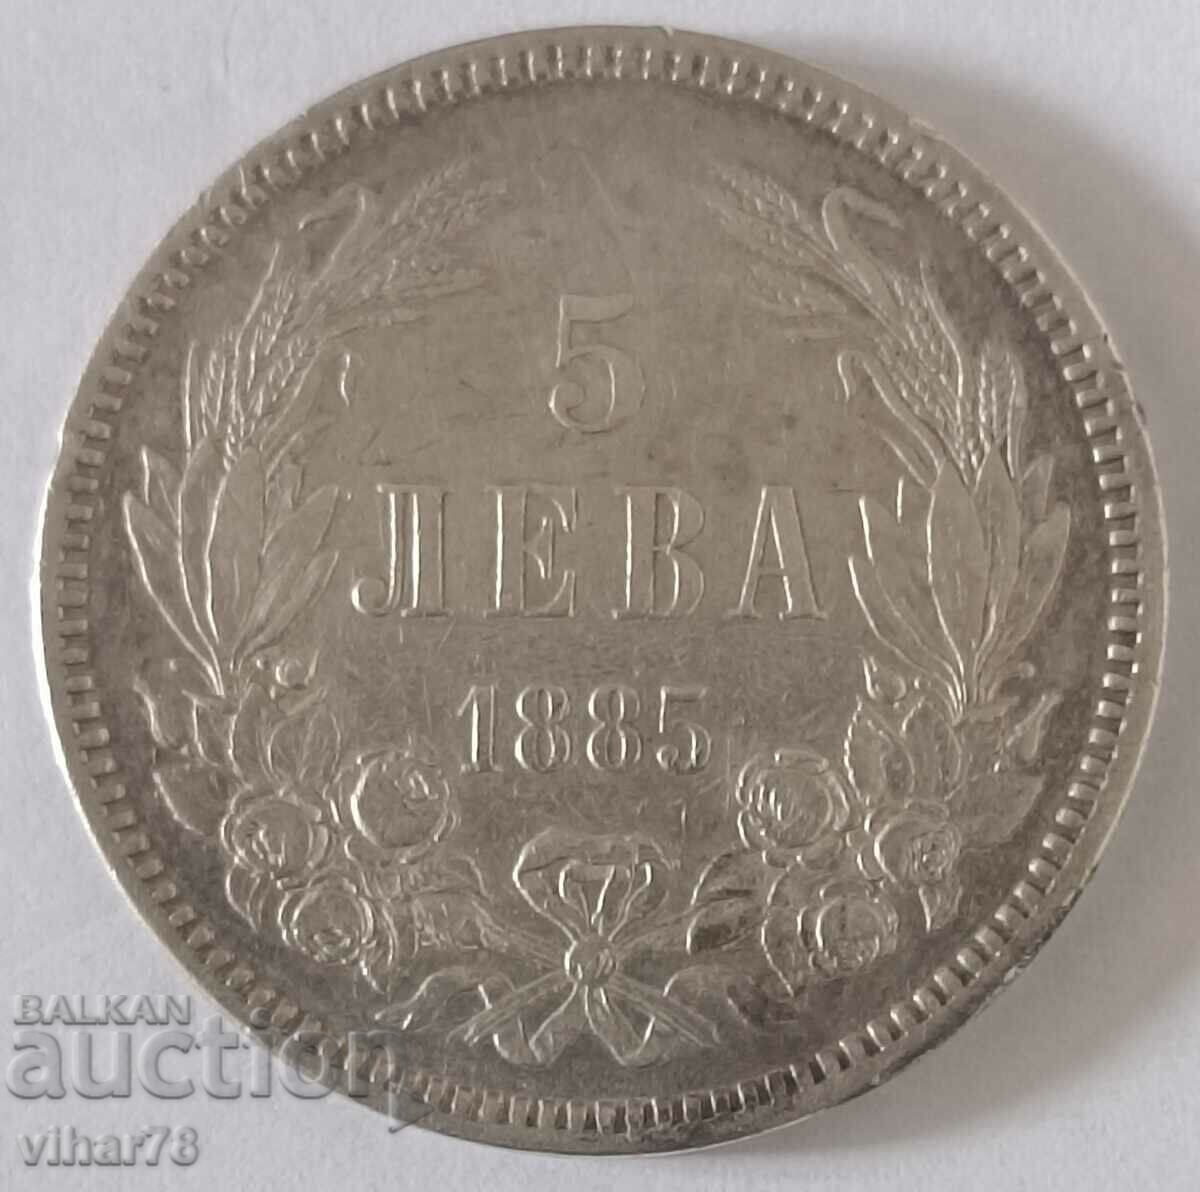 Сребърна монета 5 лева 1885 година